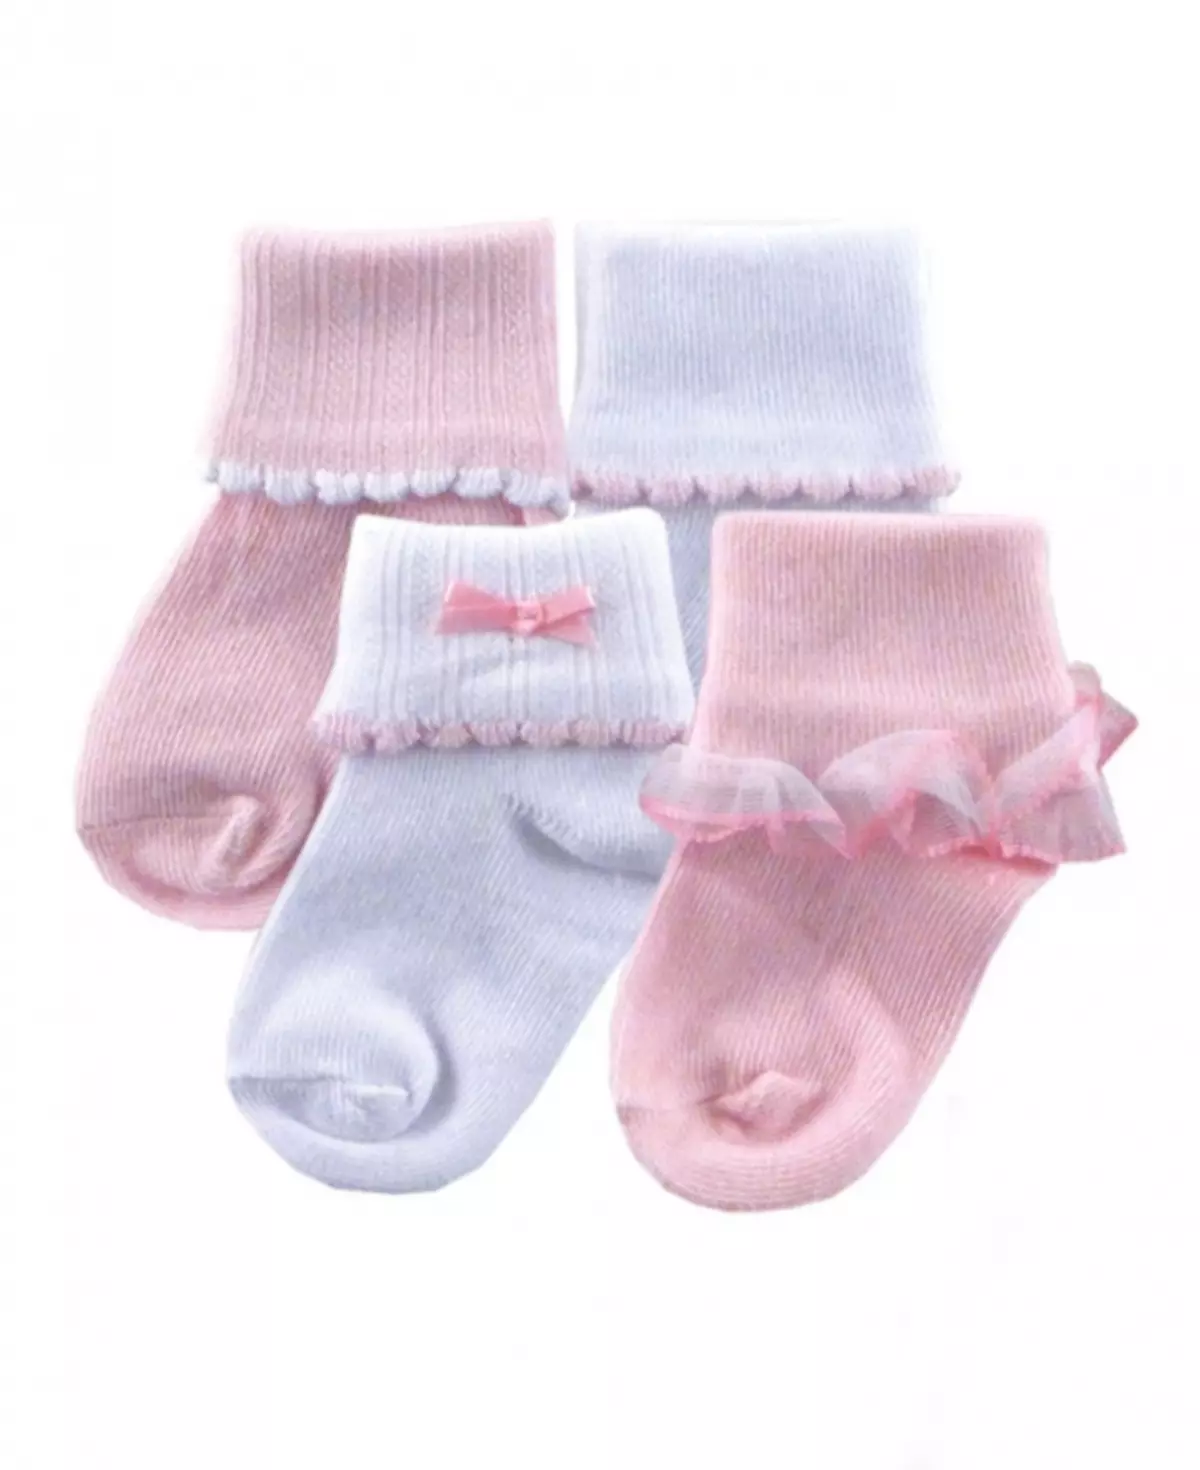 ਨਵਜੰਮੇ ਲਈ socks (59 ਫੋਟੋ): girls ਲਈ ਬੁਣਿਆ ਮਾਡਲ, ਆਕਾਰ ਨਾਲ ਪਤਾ ਕਰ ਰਹੇ ਹਨ 14951_4